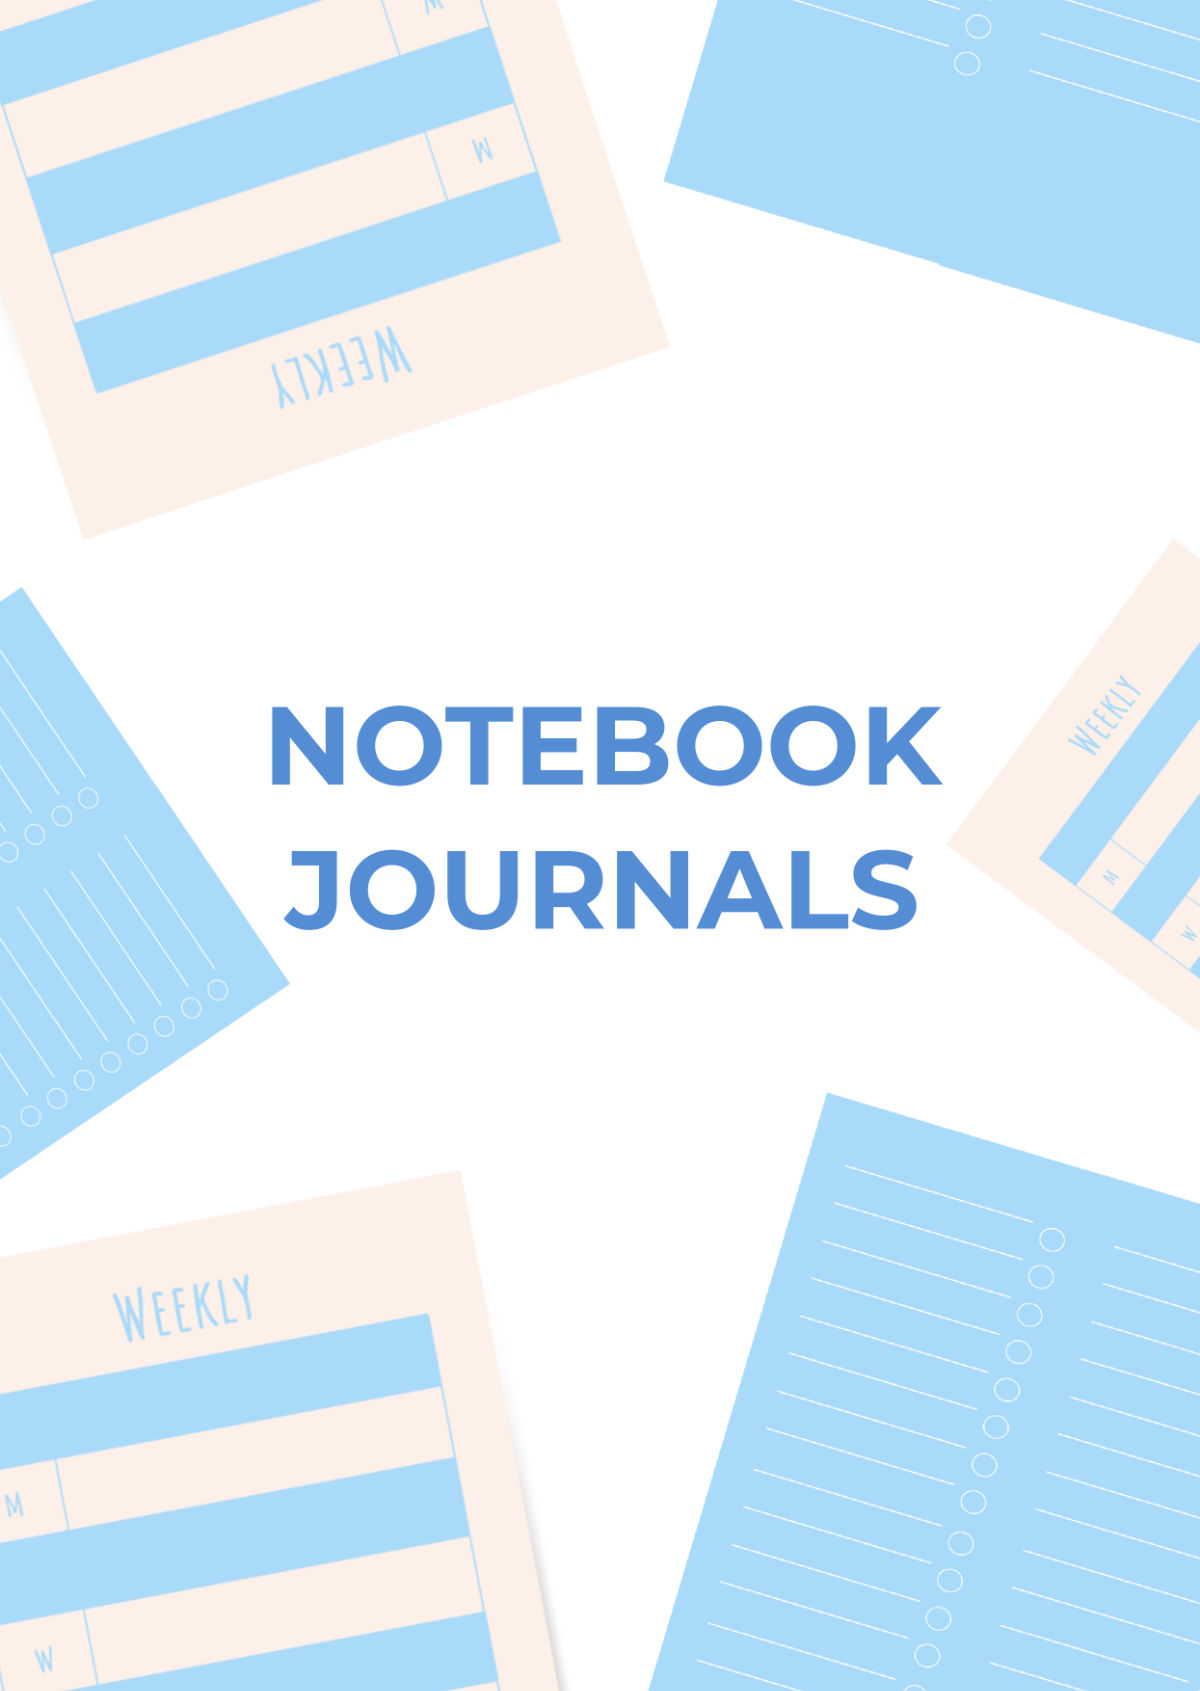 Sample Notebook Journals Template